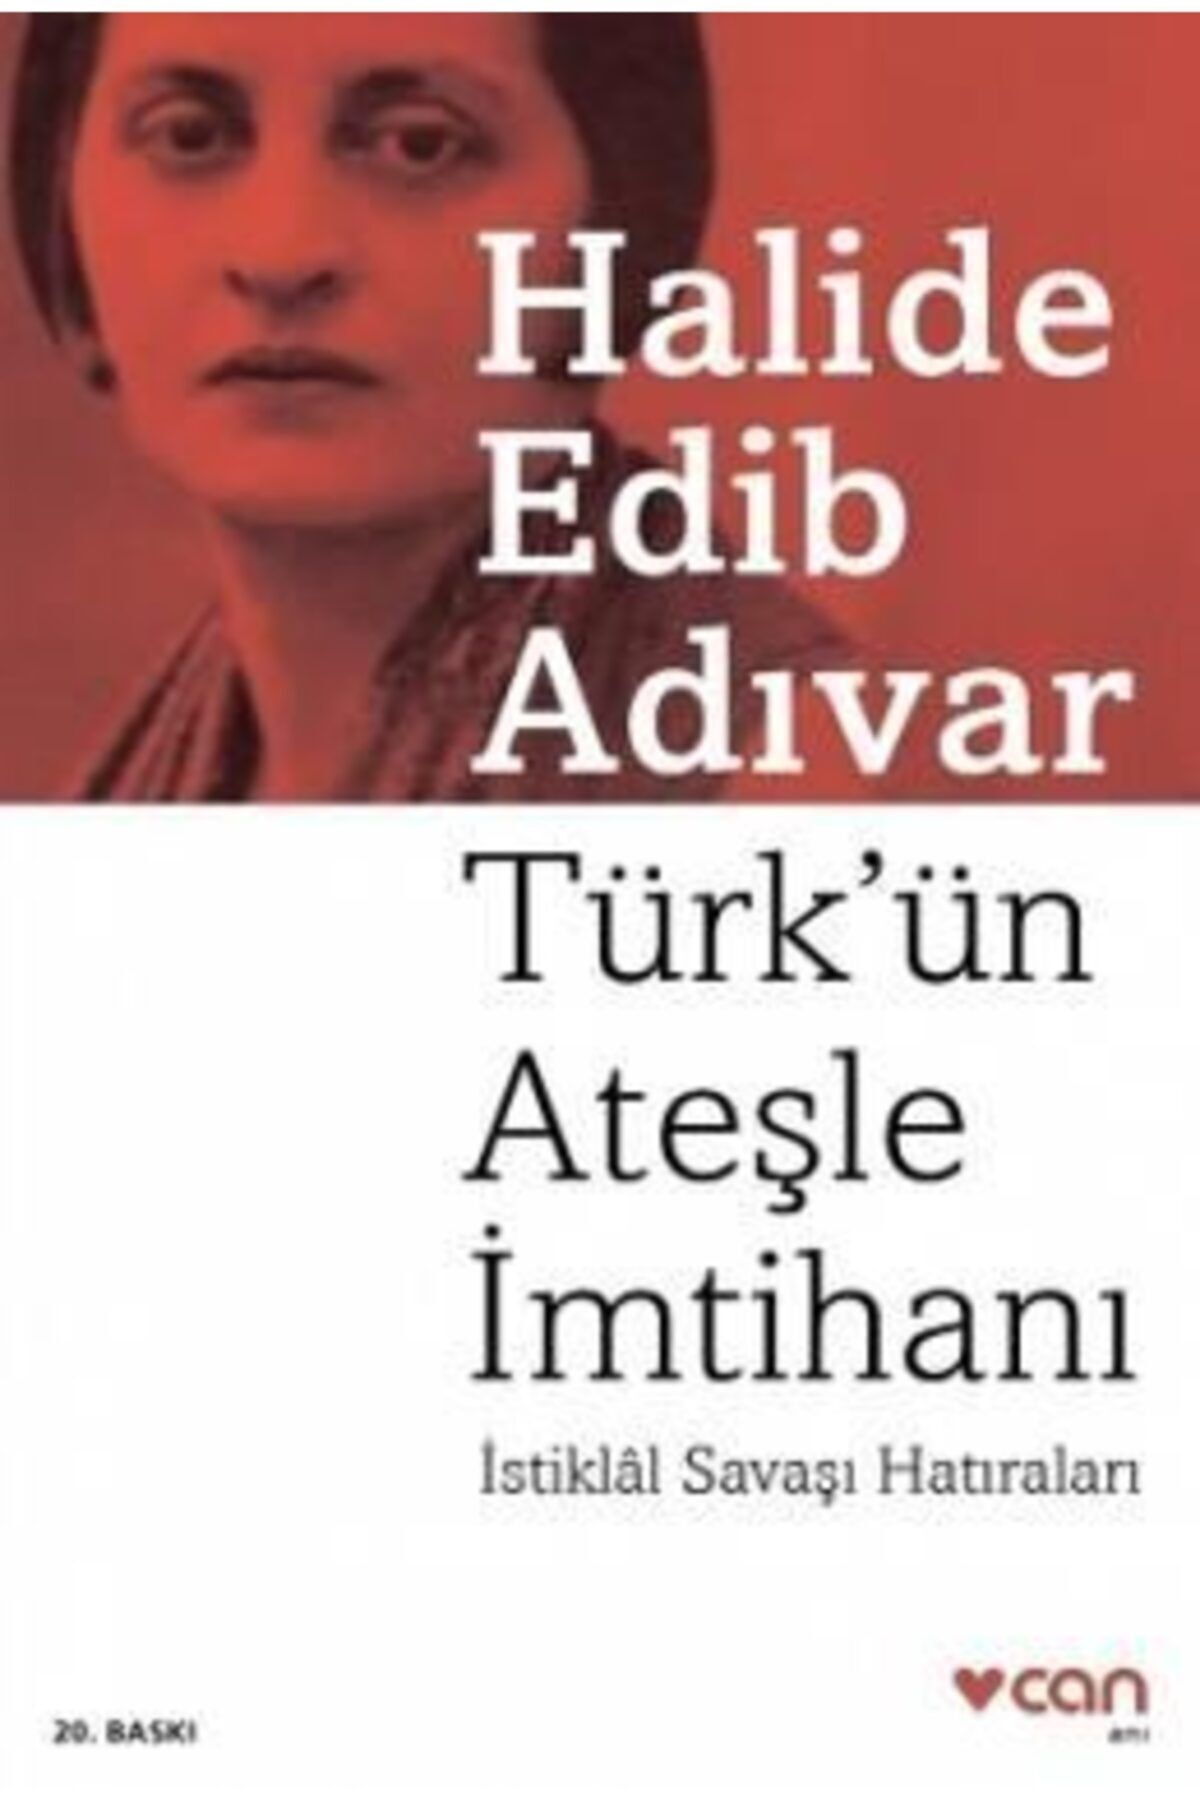 Can Sanat Yayınları Türk’ün Ateşle Imtihanı | Halide Edib Adıvar | Can Yayınları